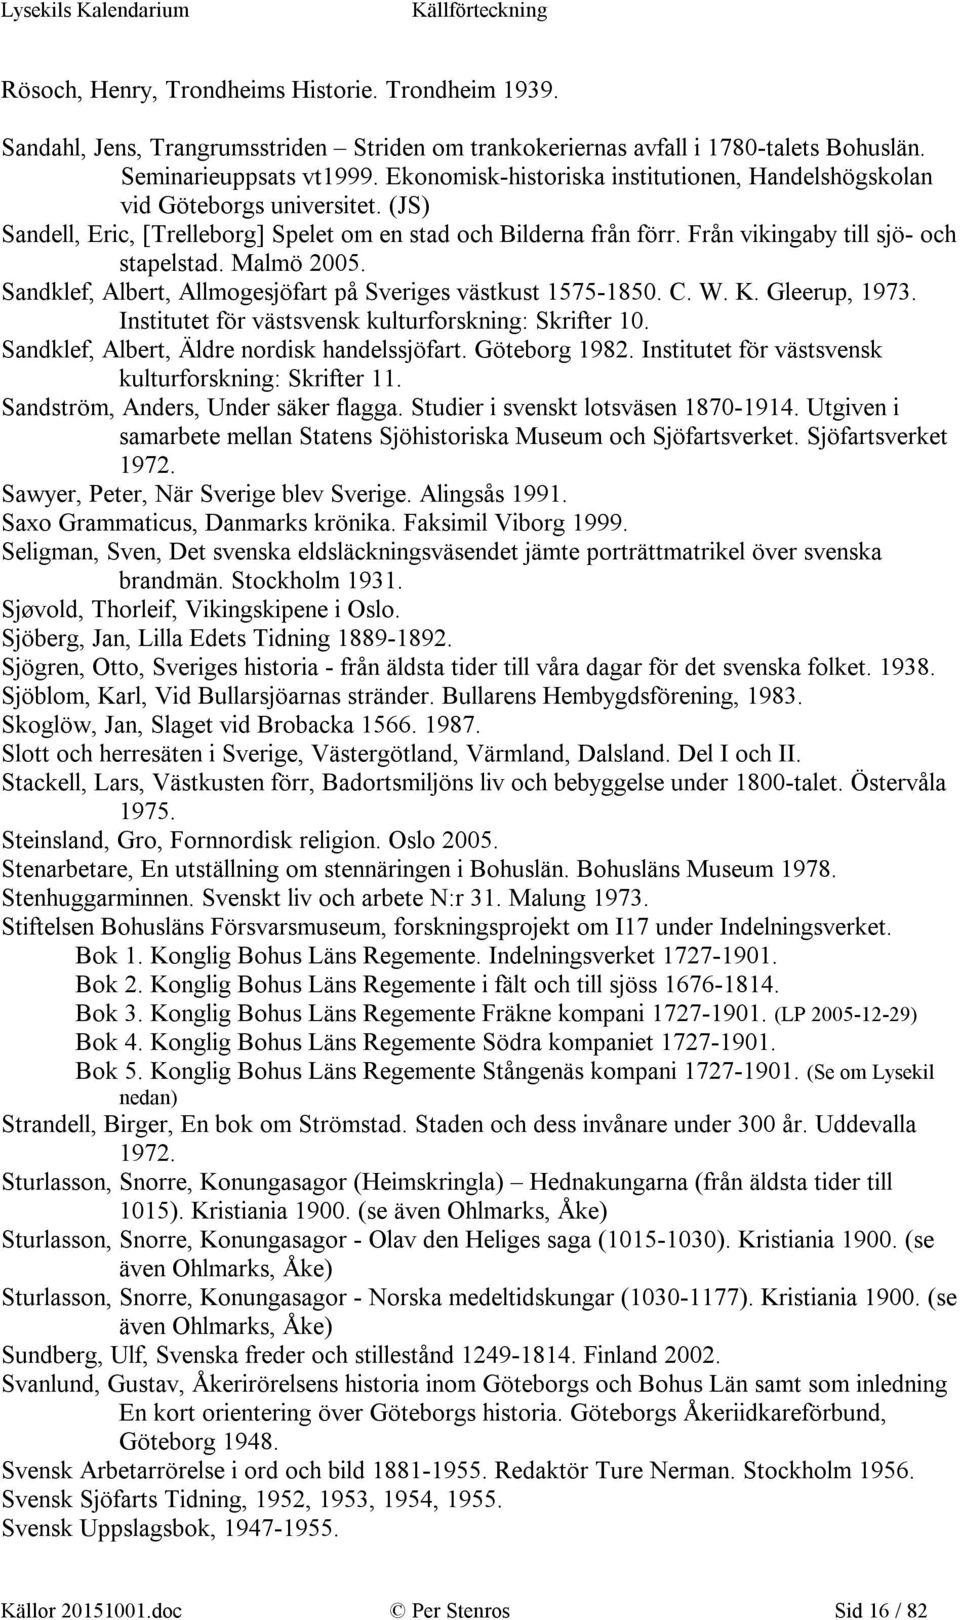 Malmö 2005. Sandklef, Albert, Allmogesjöfart på Sveriges västkust 1575-1850. C. W. K. Gleerup, 1973. Institutet för västsvensk kulturforskning: Skrifter 10.